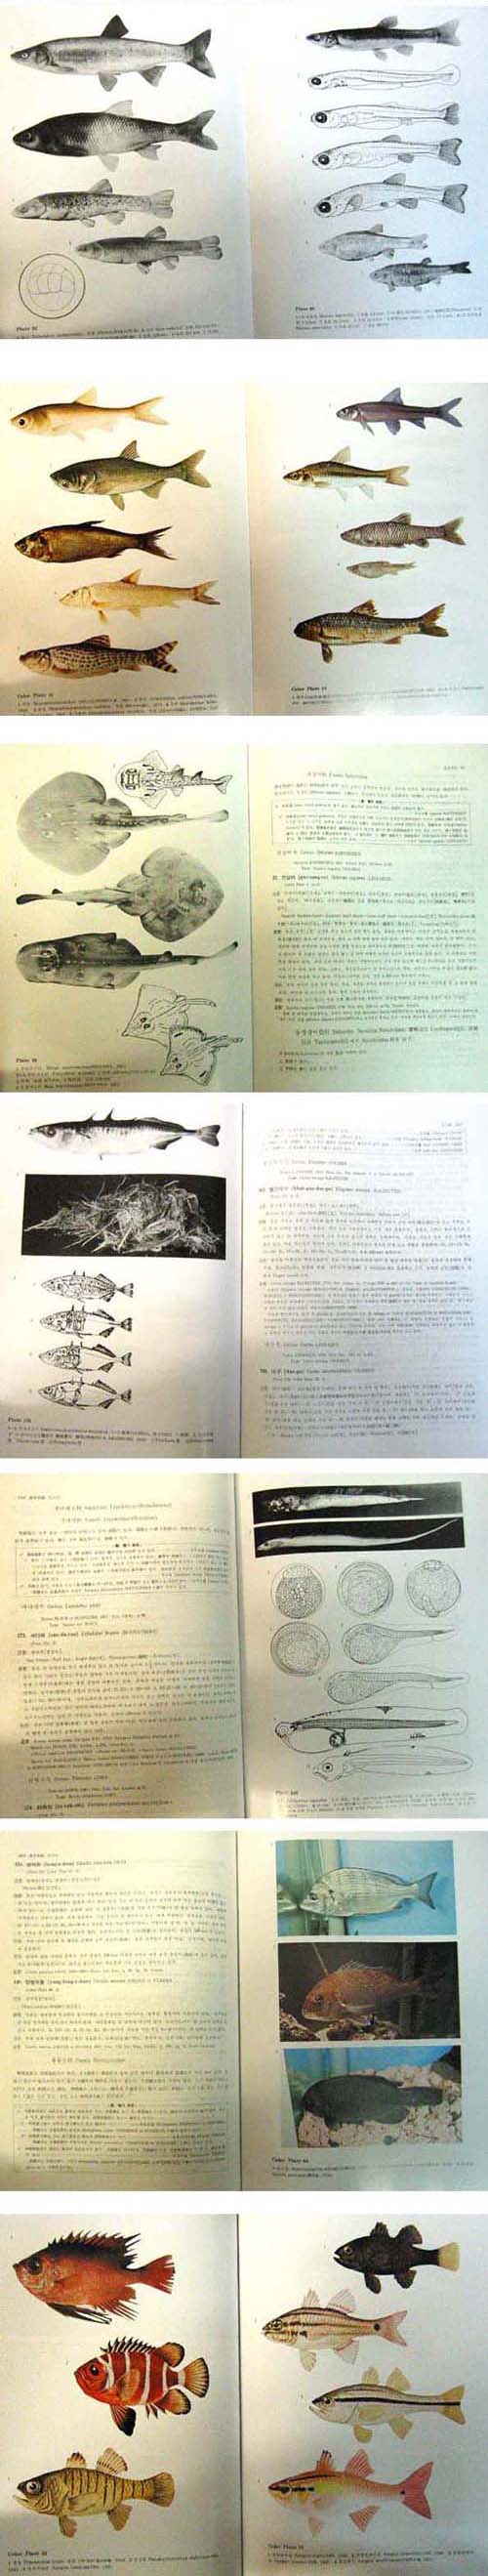 새책.한국어도보 韓國魚圖譜 - 어 도보 -